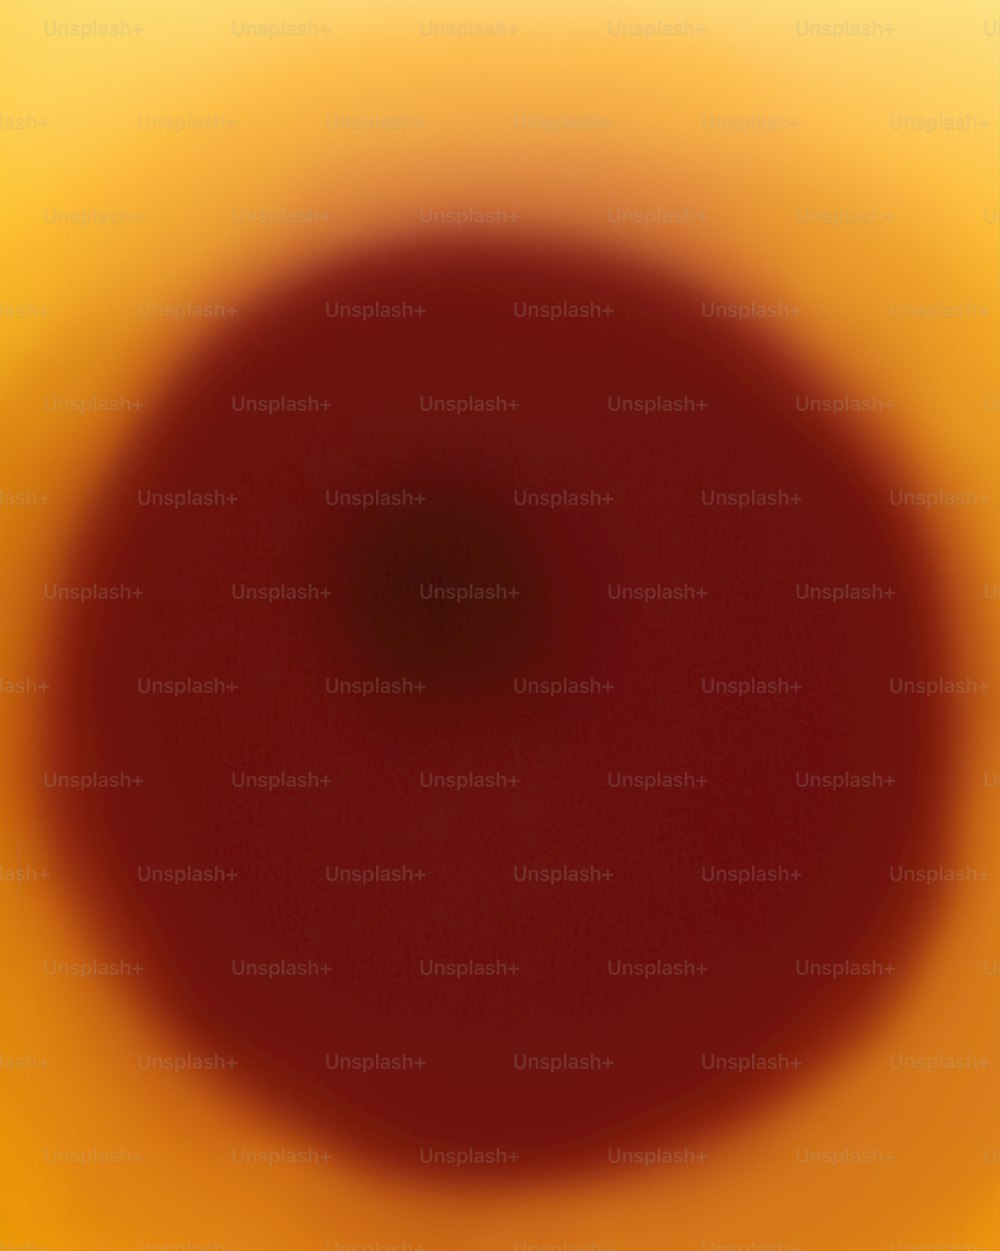 Una imagen borrosa de un círculo rojo sobre un fondo amarillo